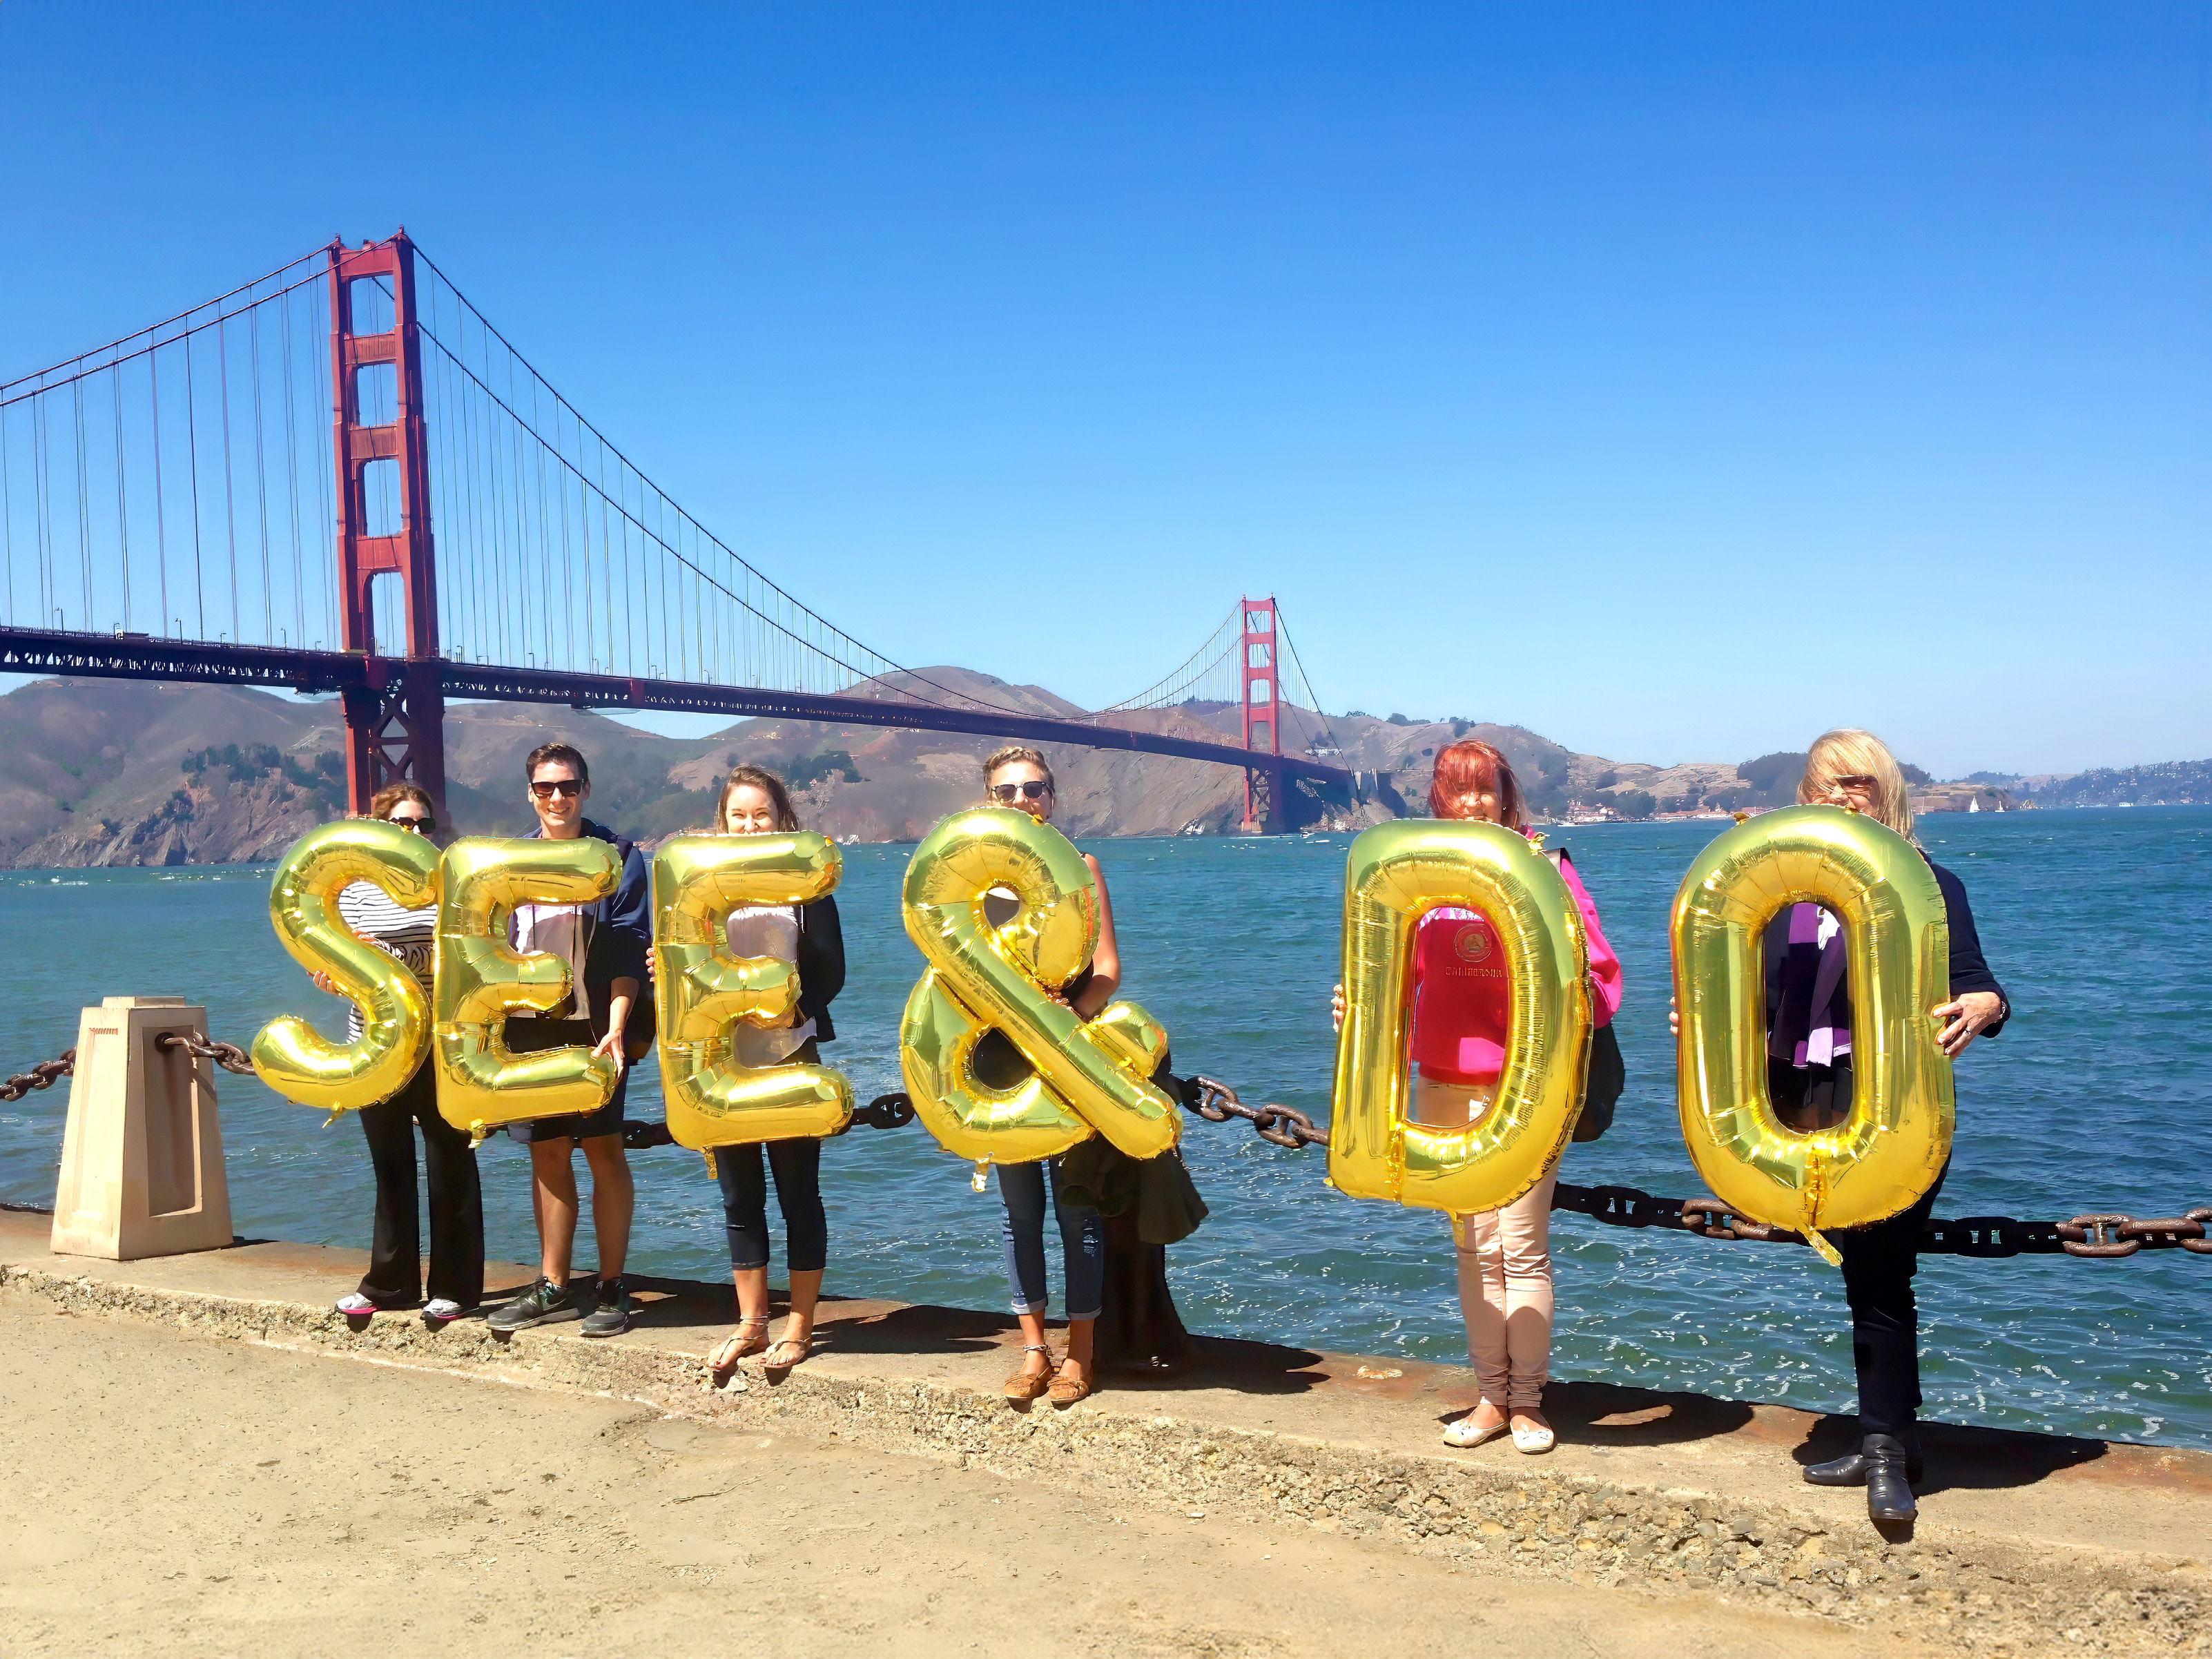 US, San Francisco, Golden Gate Bridge - See & Do, Silence Was Golden, gold balloons